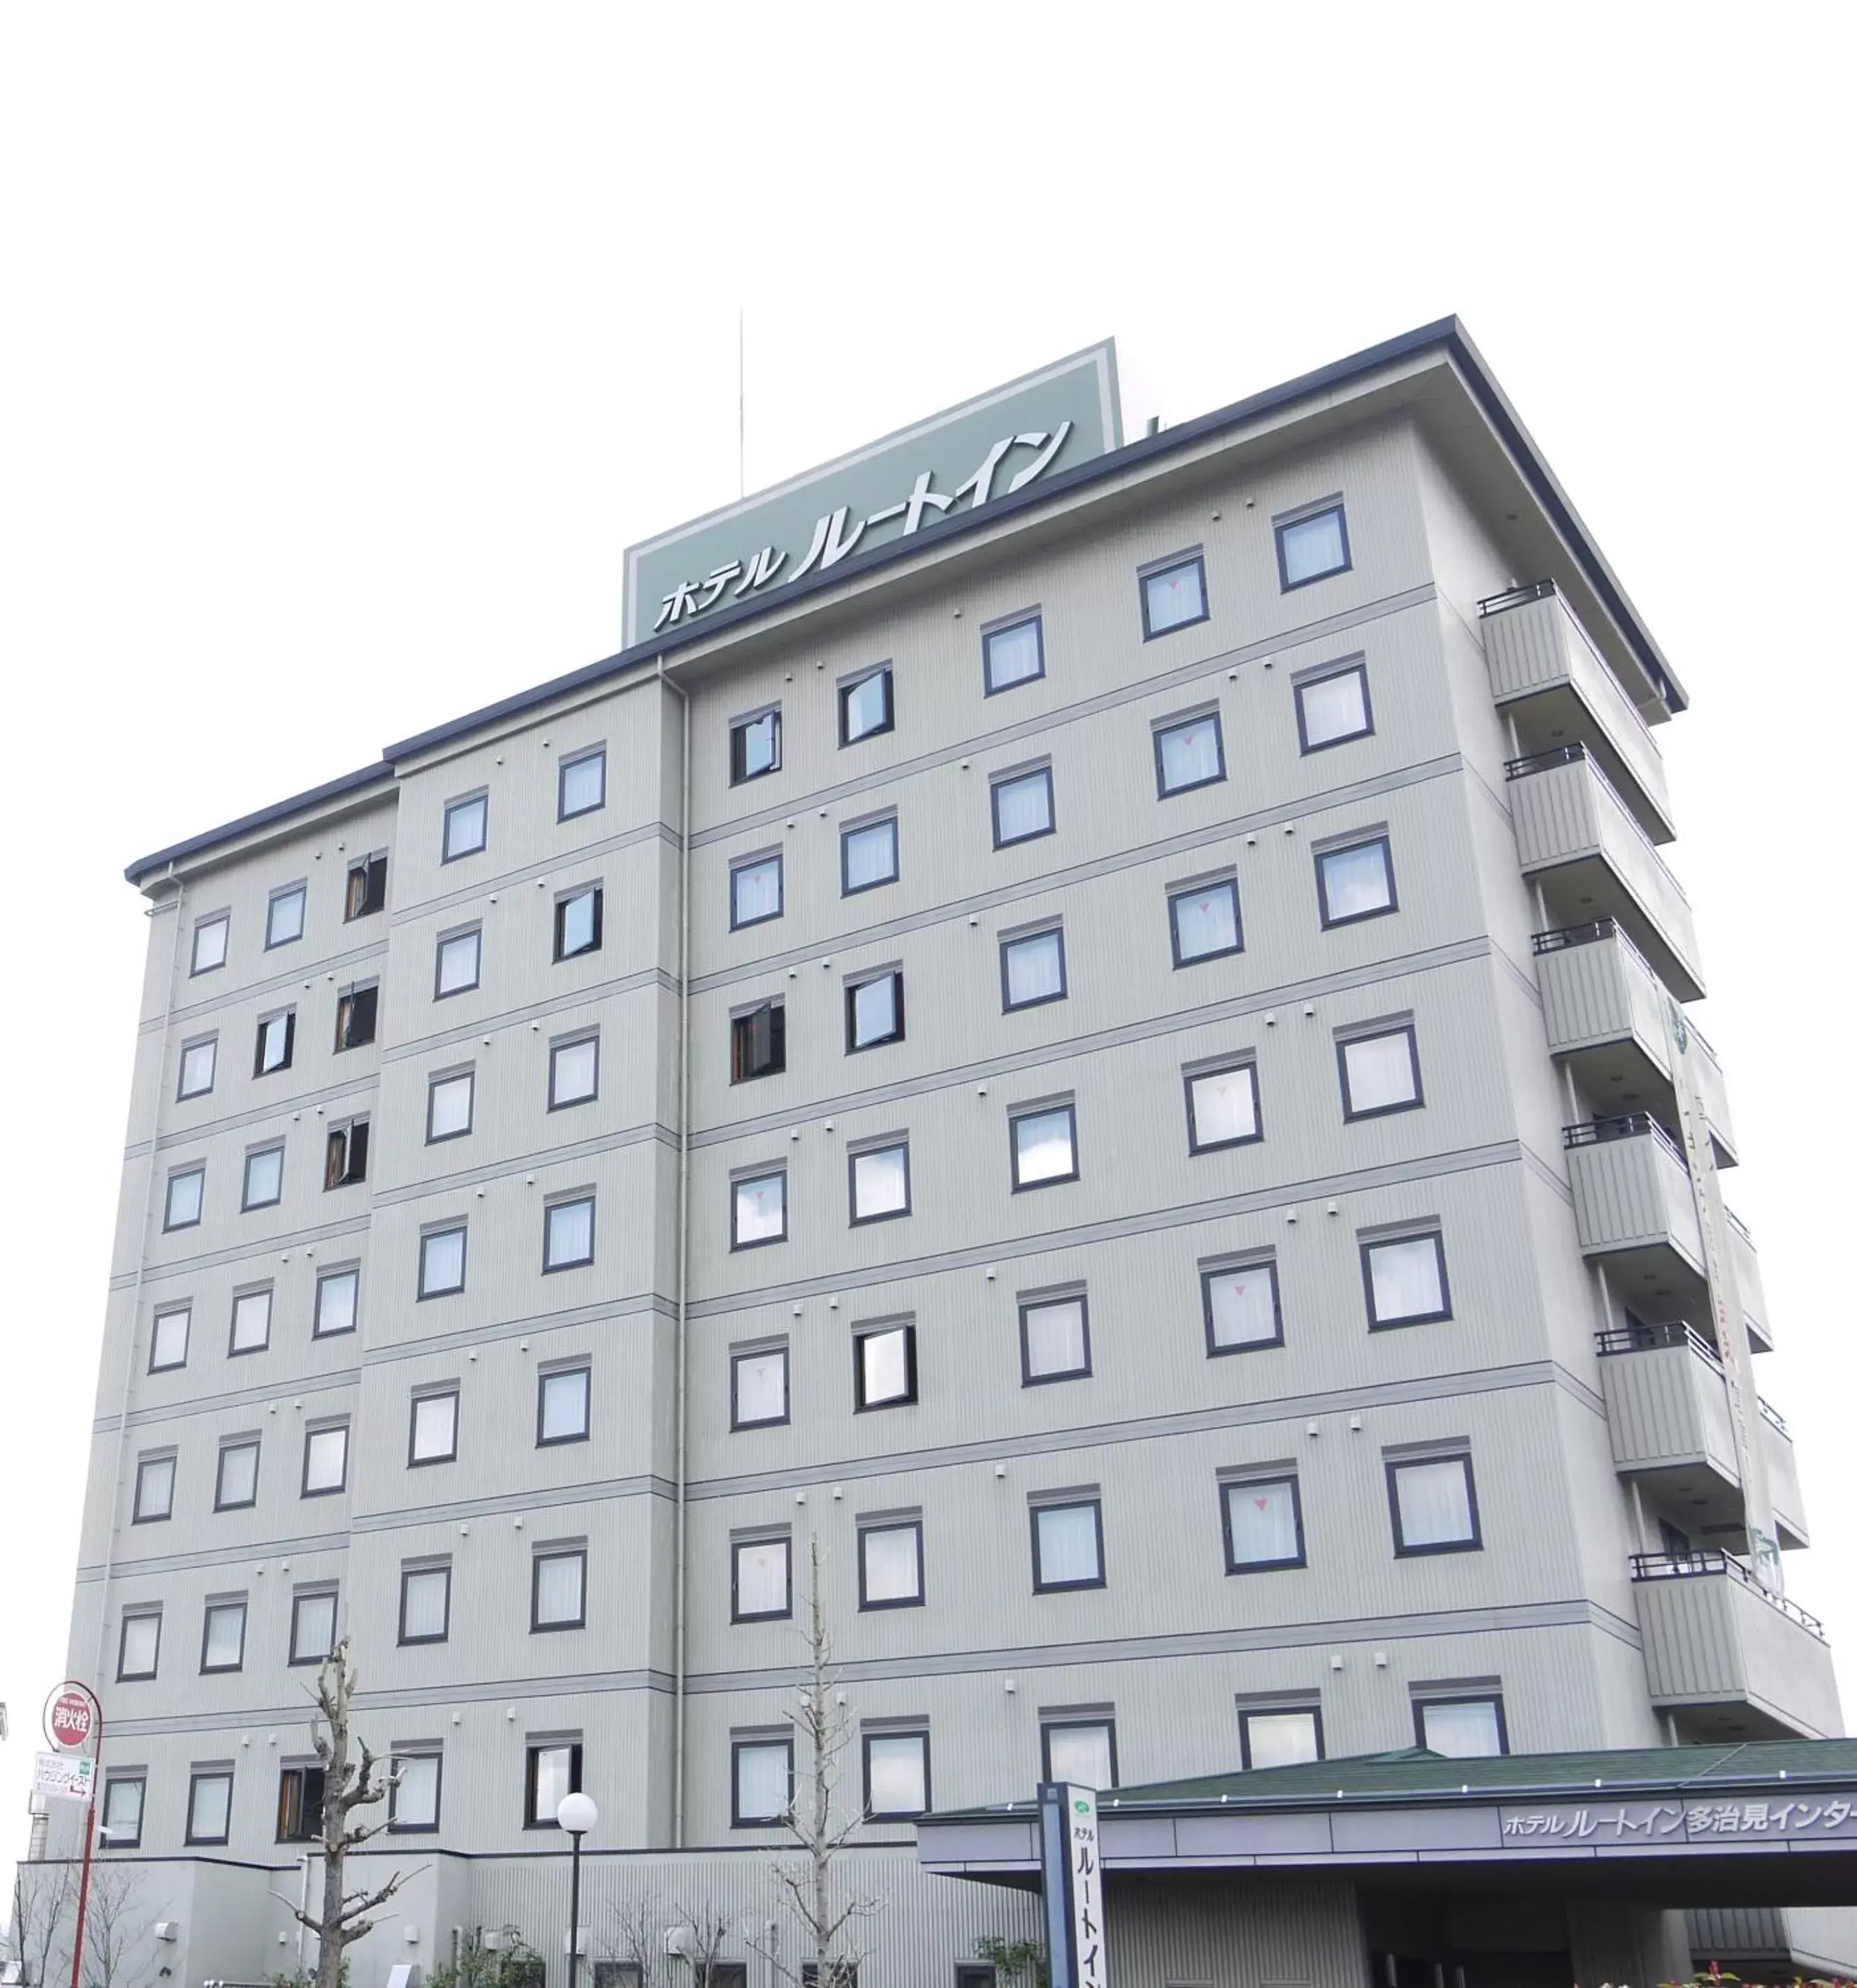 Property building in Hotel Route-Inn Tajimi Inter